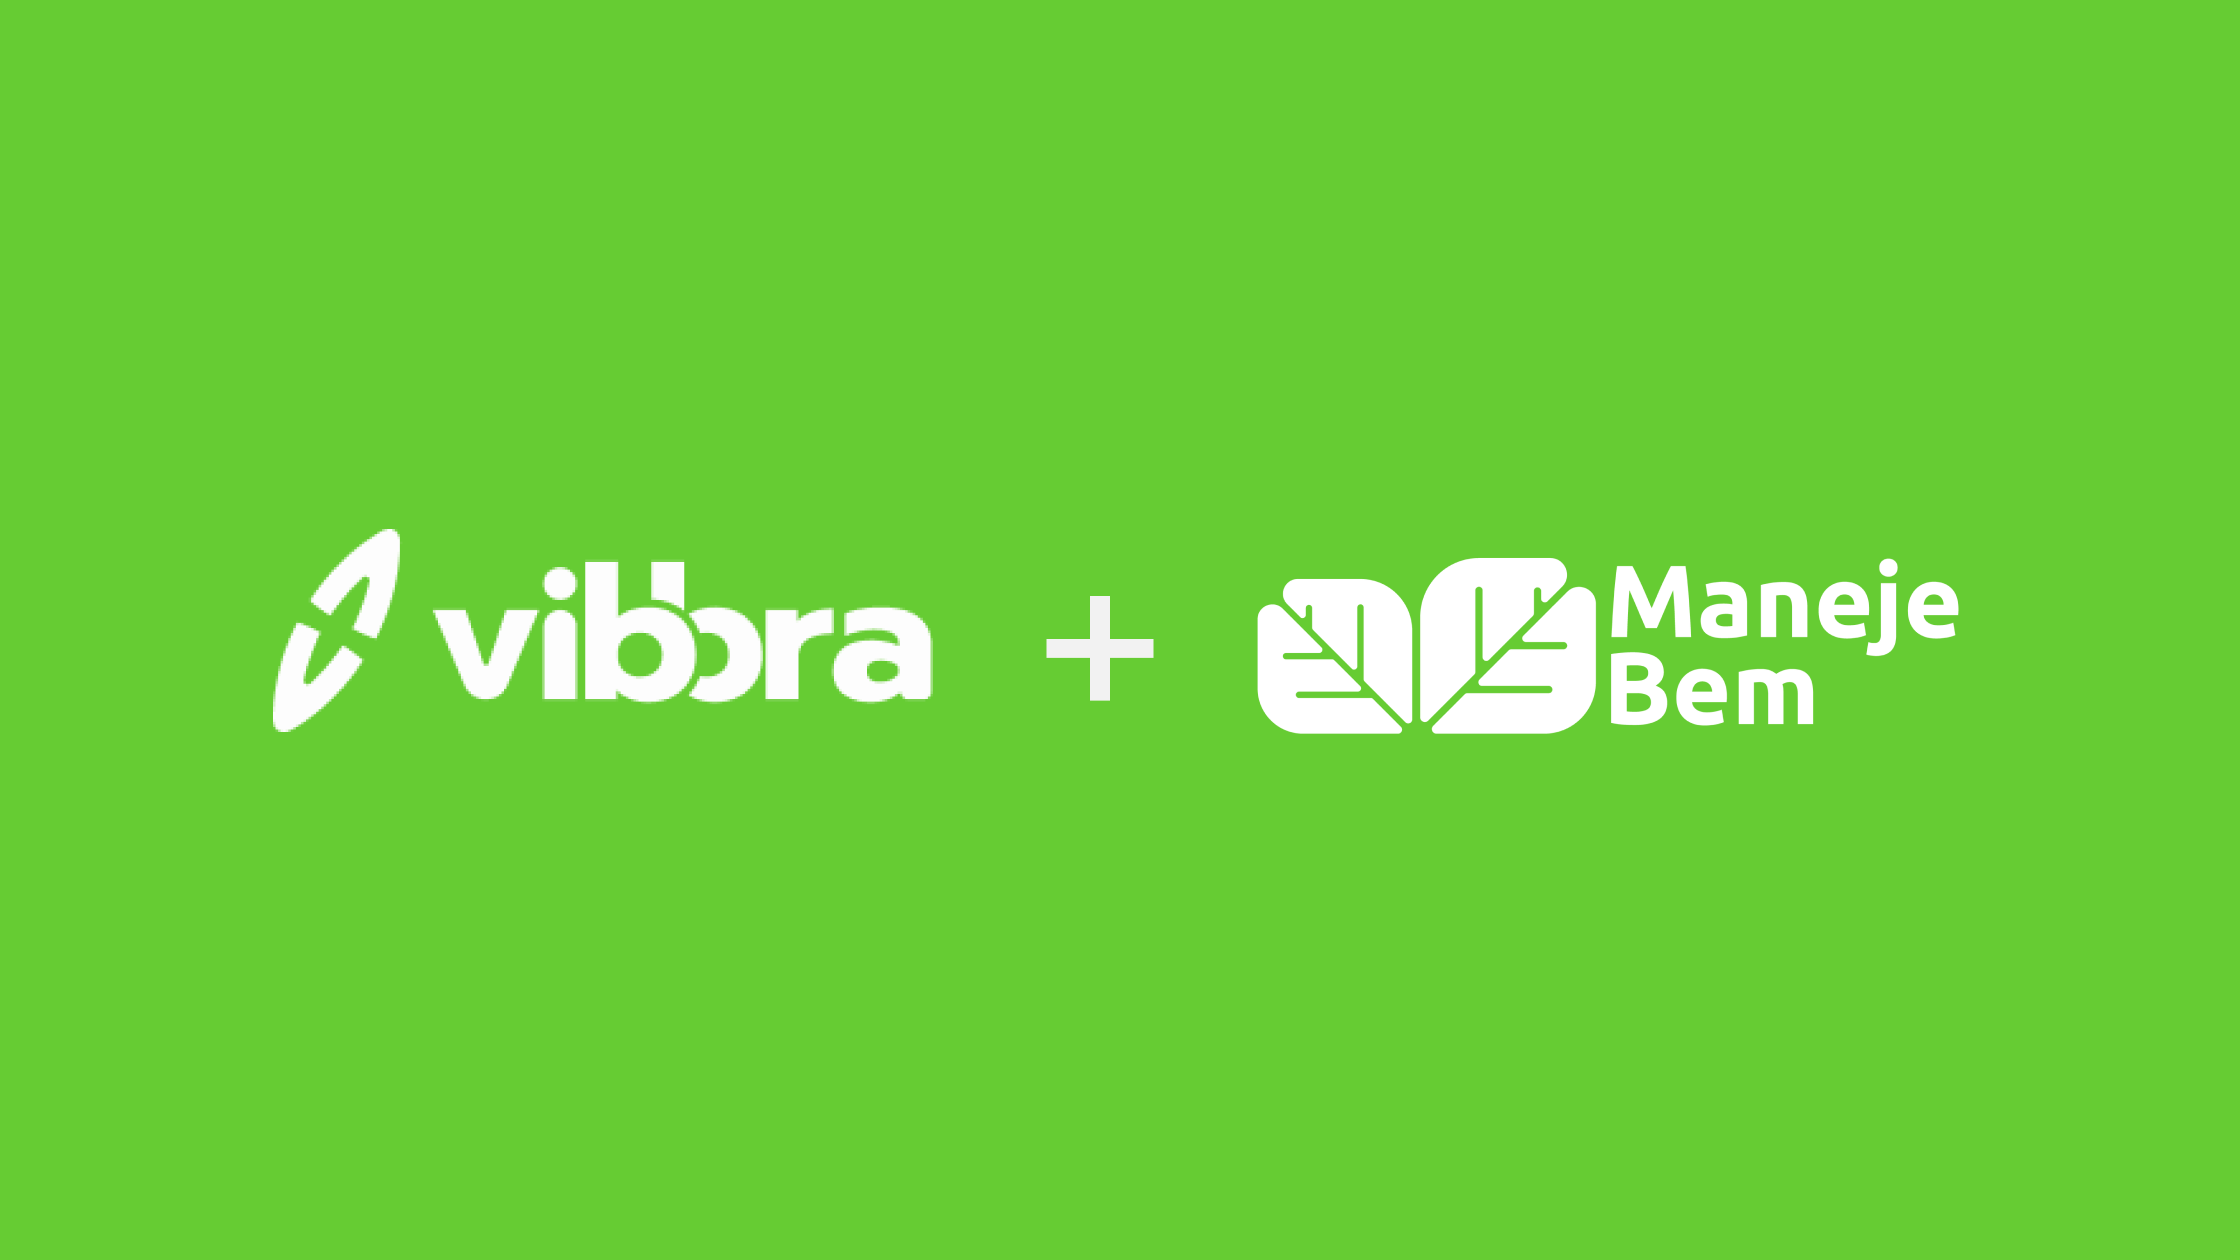 Logotipo das empresas Vibbra e ManejeBem